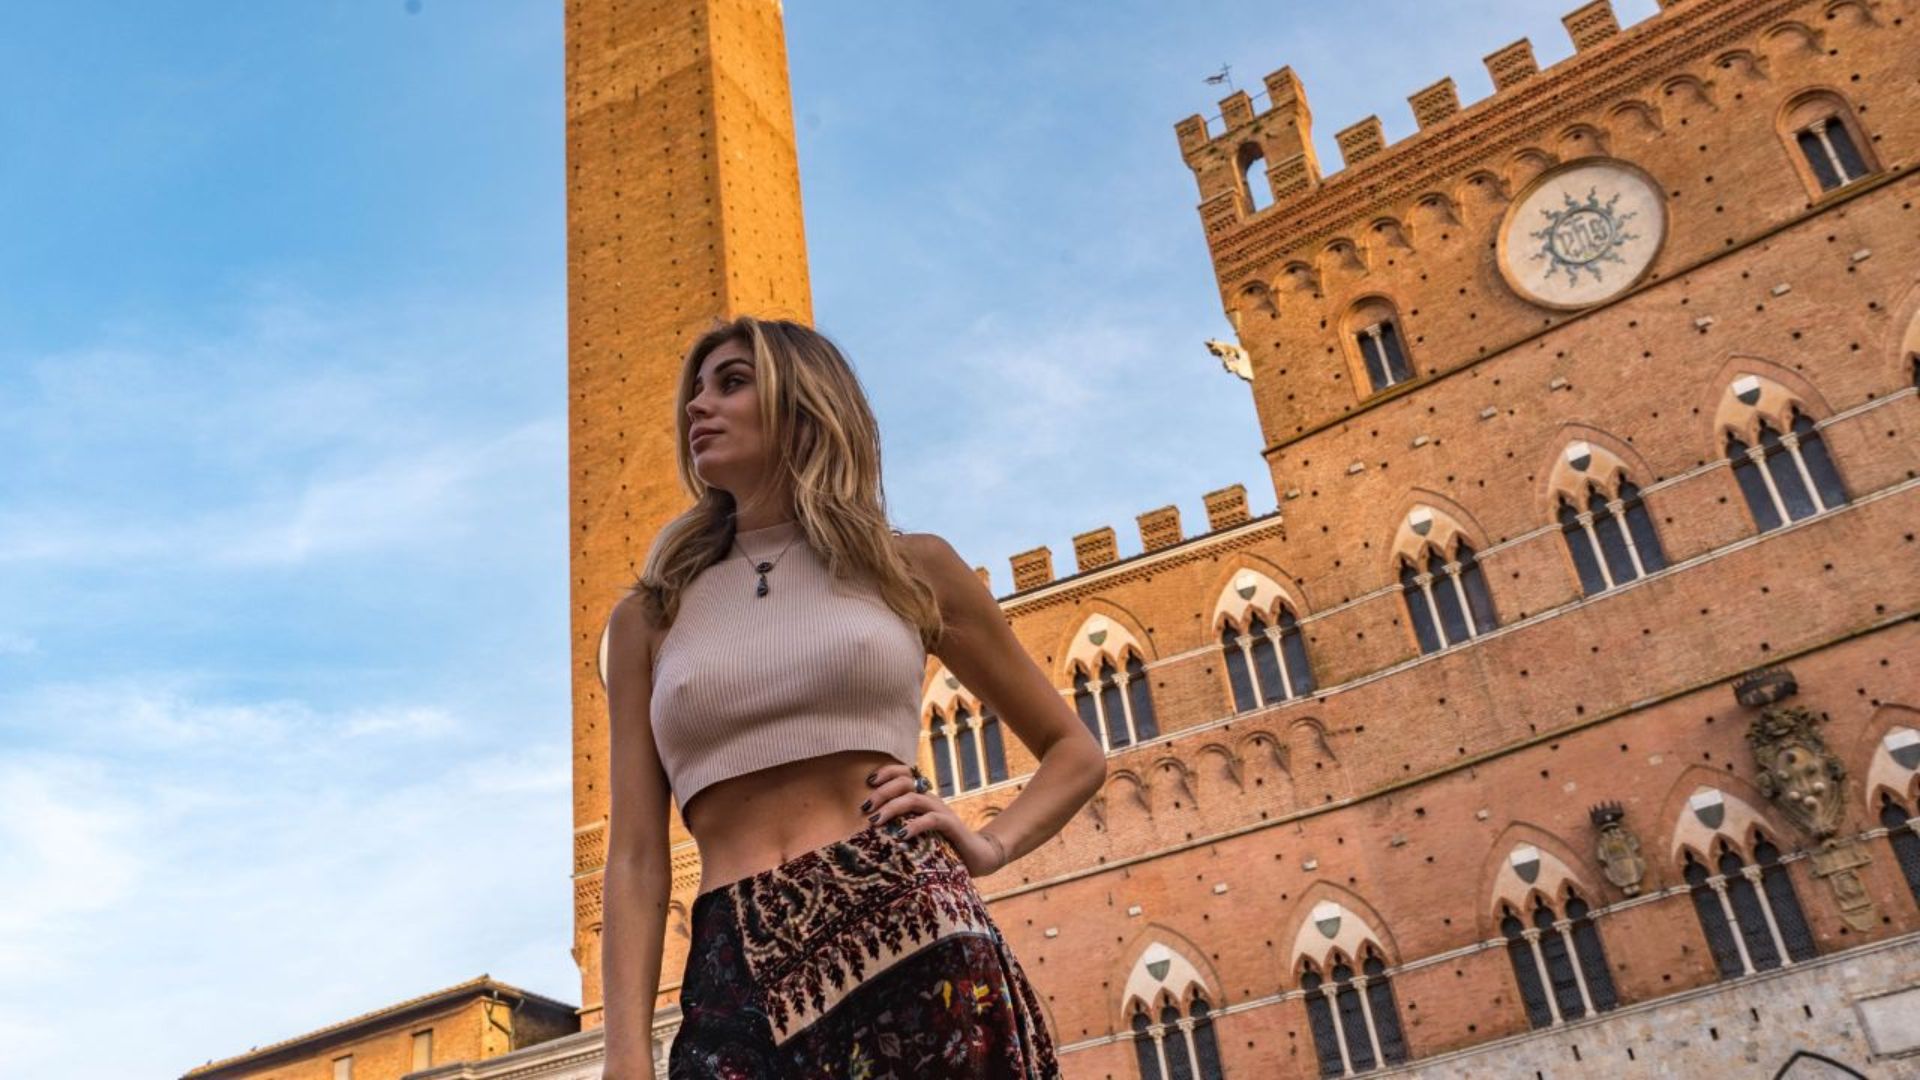 Tour privato alla scoperta dei luoghi più iconici del centro storico di Siena con fotografo personale